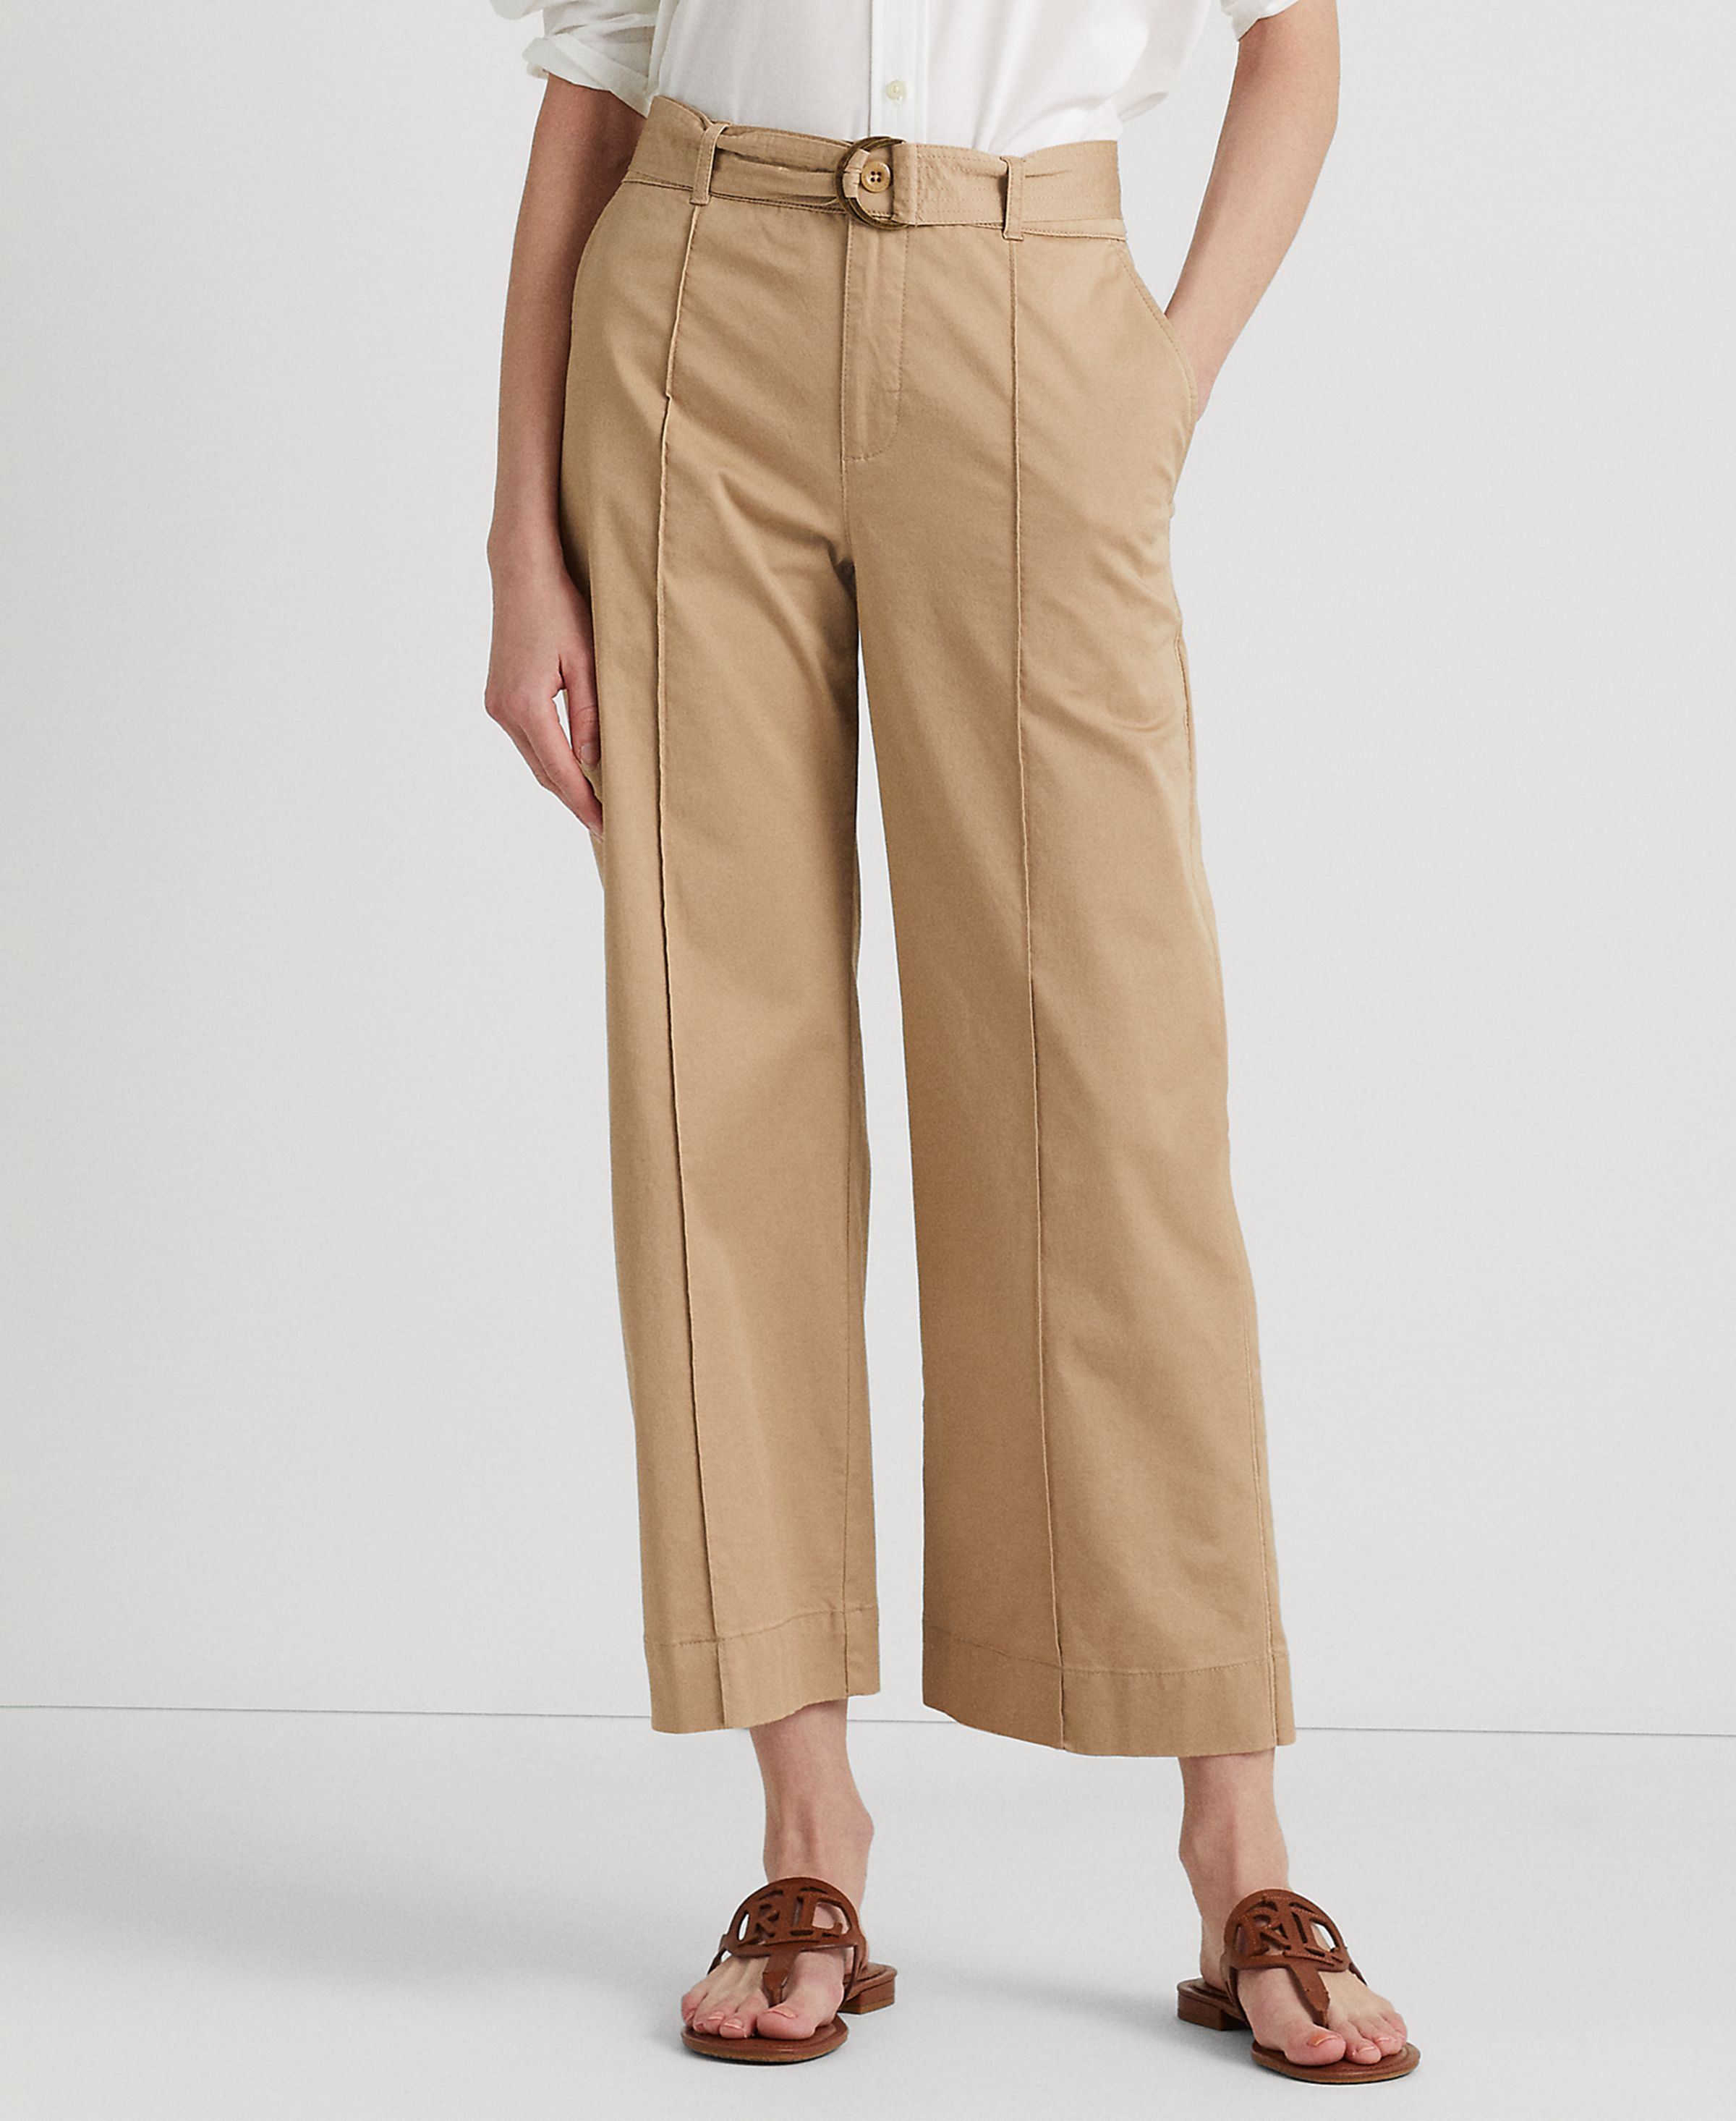 Lauren Ralph Lauren Women's Pants Sz 4 Micro-Sanded Twill Belted Wide-Leg Brown